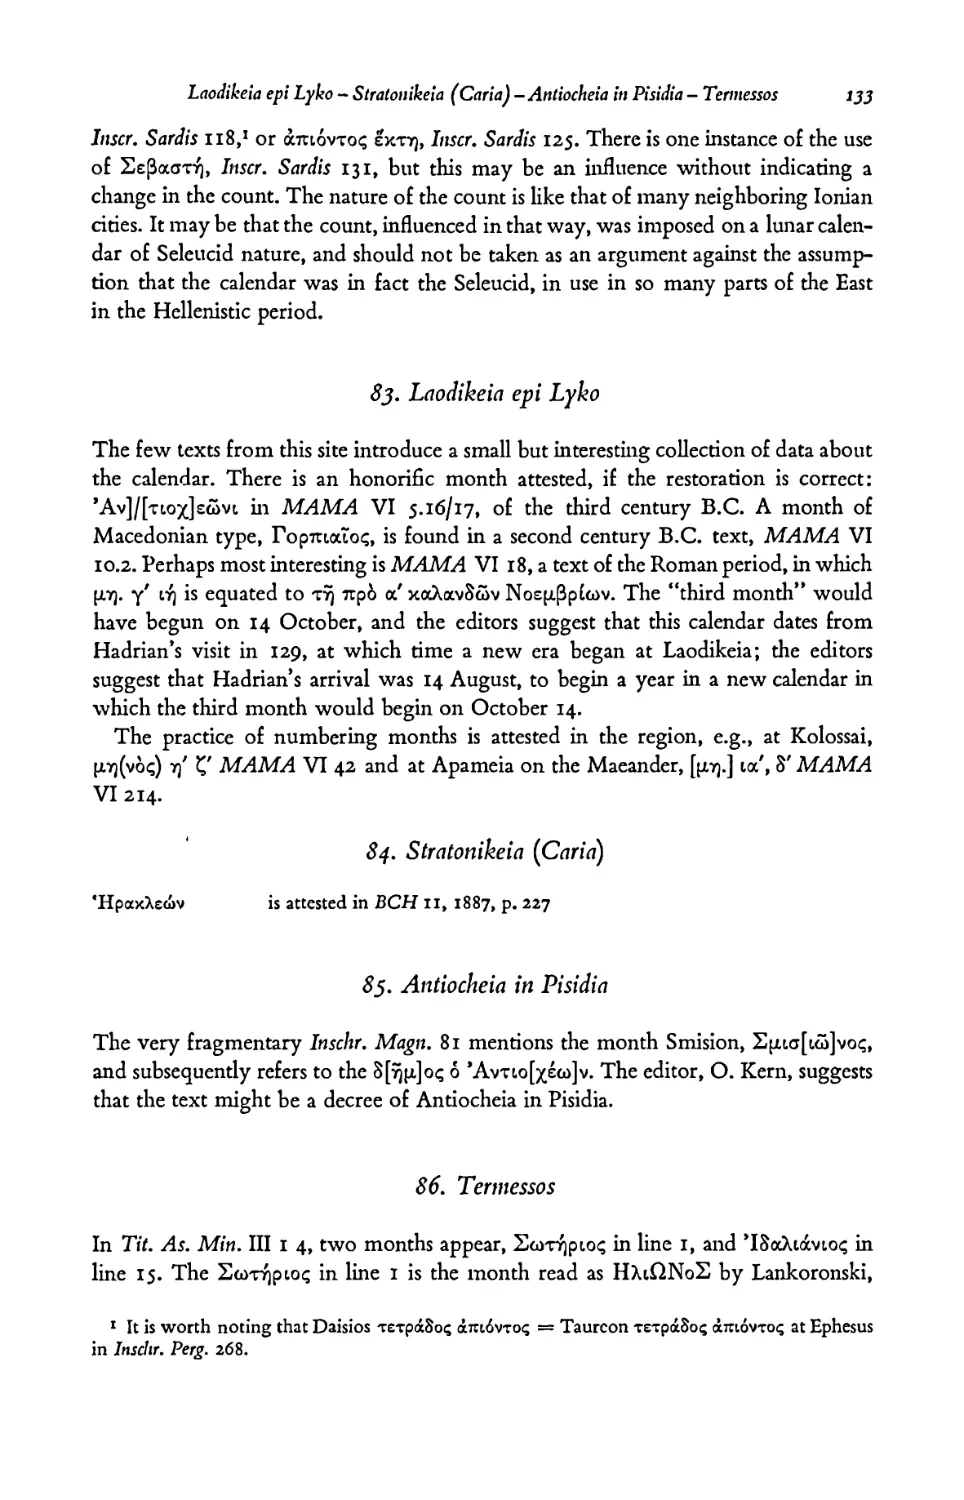 83. Laodikeia epi Lyko
85. Antiocheia in Pisidia
86. Termessos